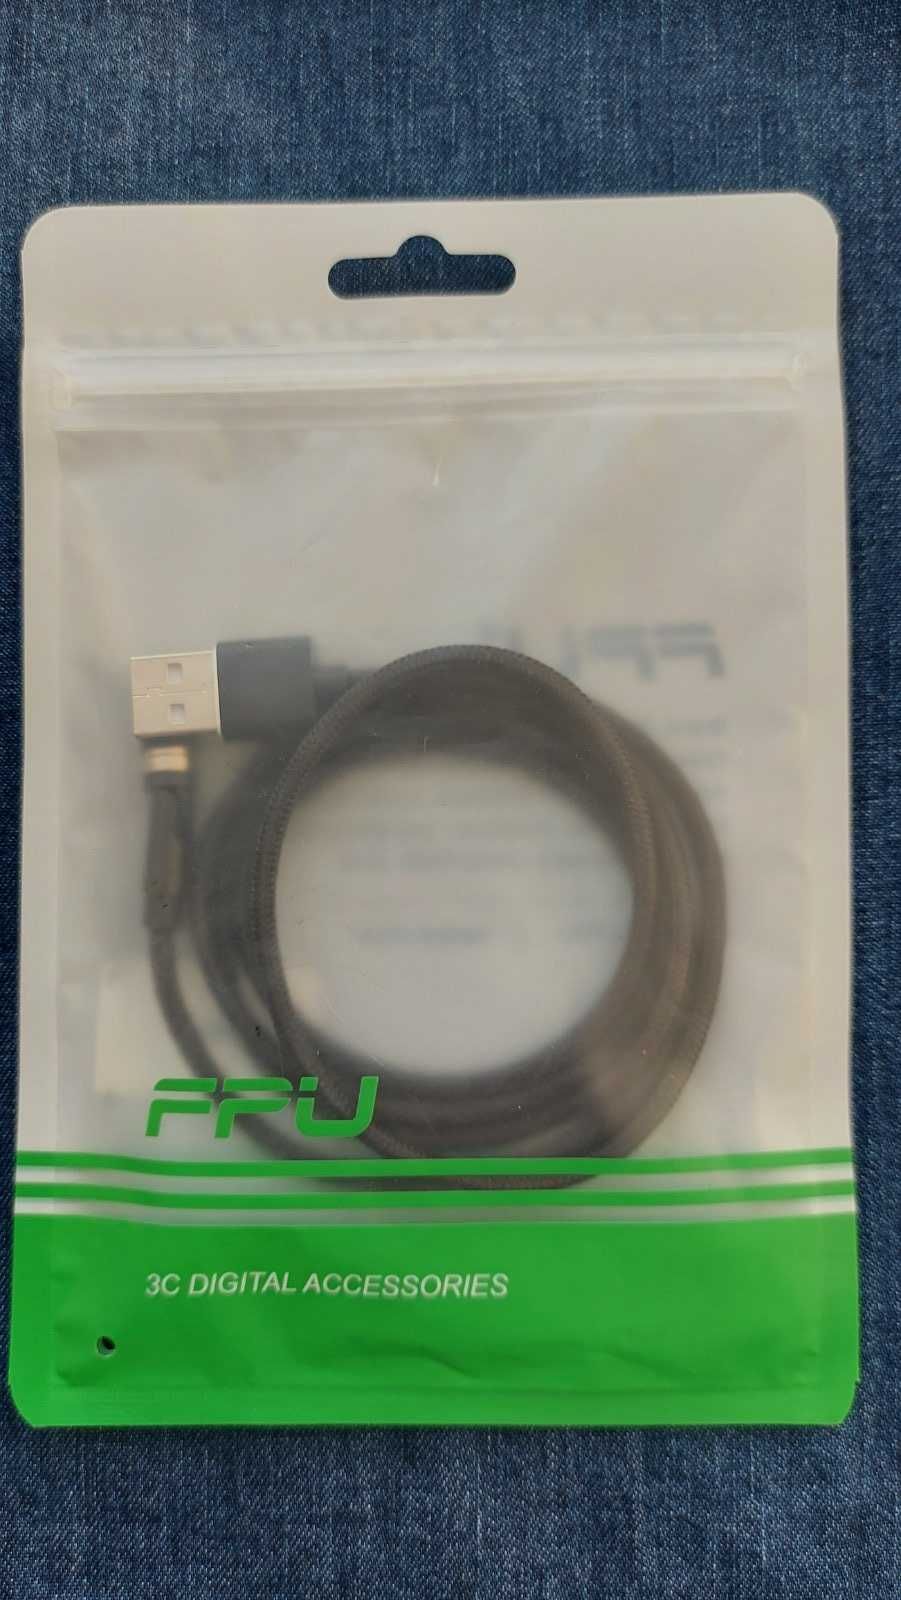 Магнітний кабель USB + 3 роз'єма micro usb, type С та iPhone